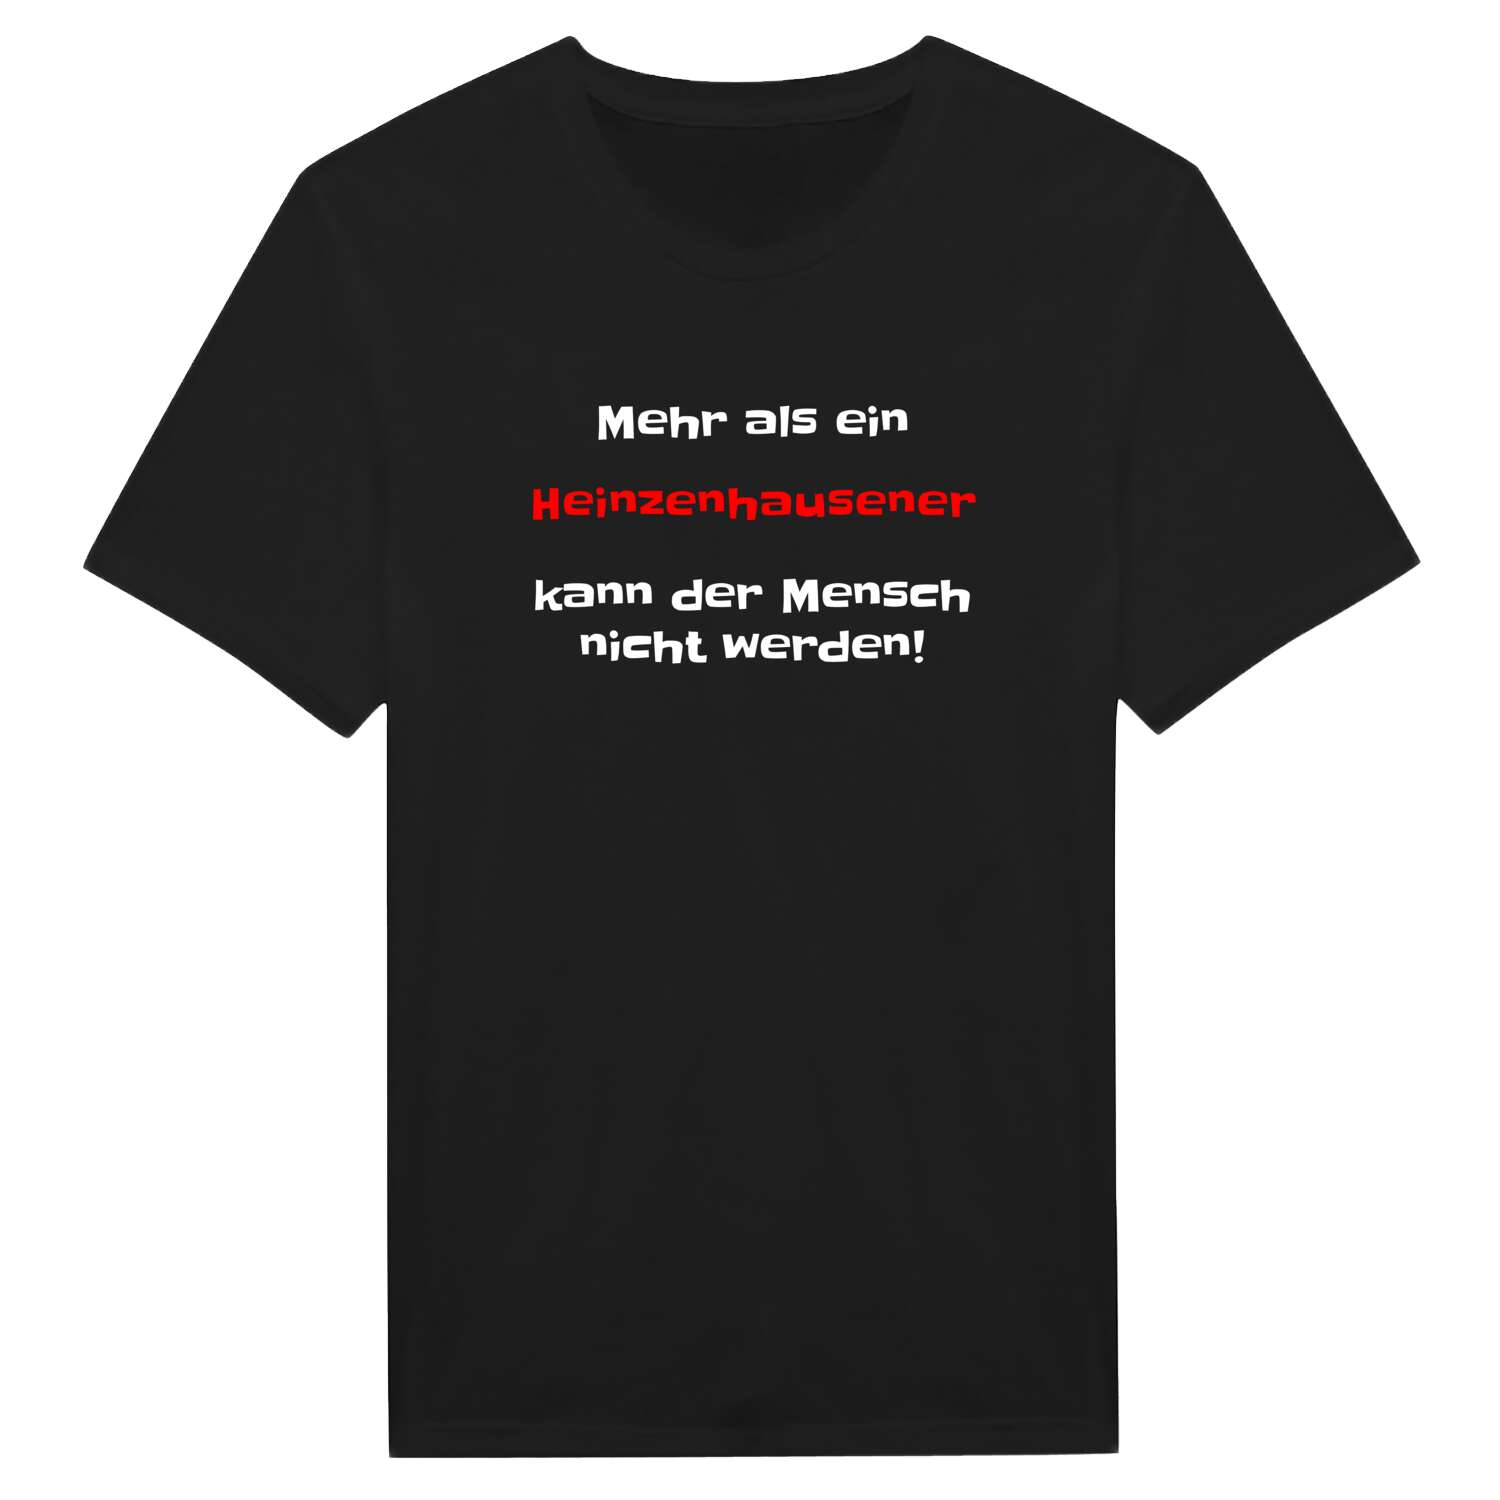 Heinzenhausen T-Shirt »Mehr als ein«